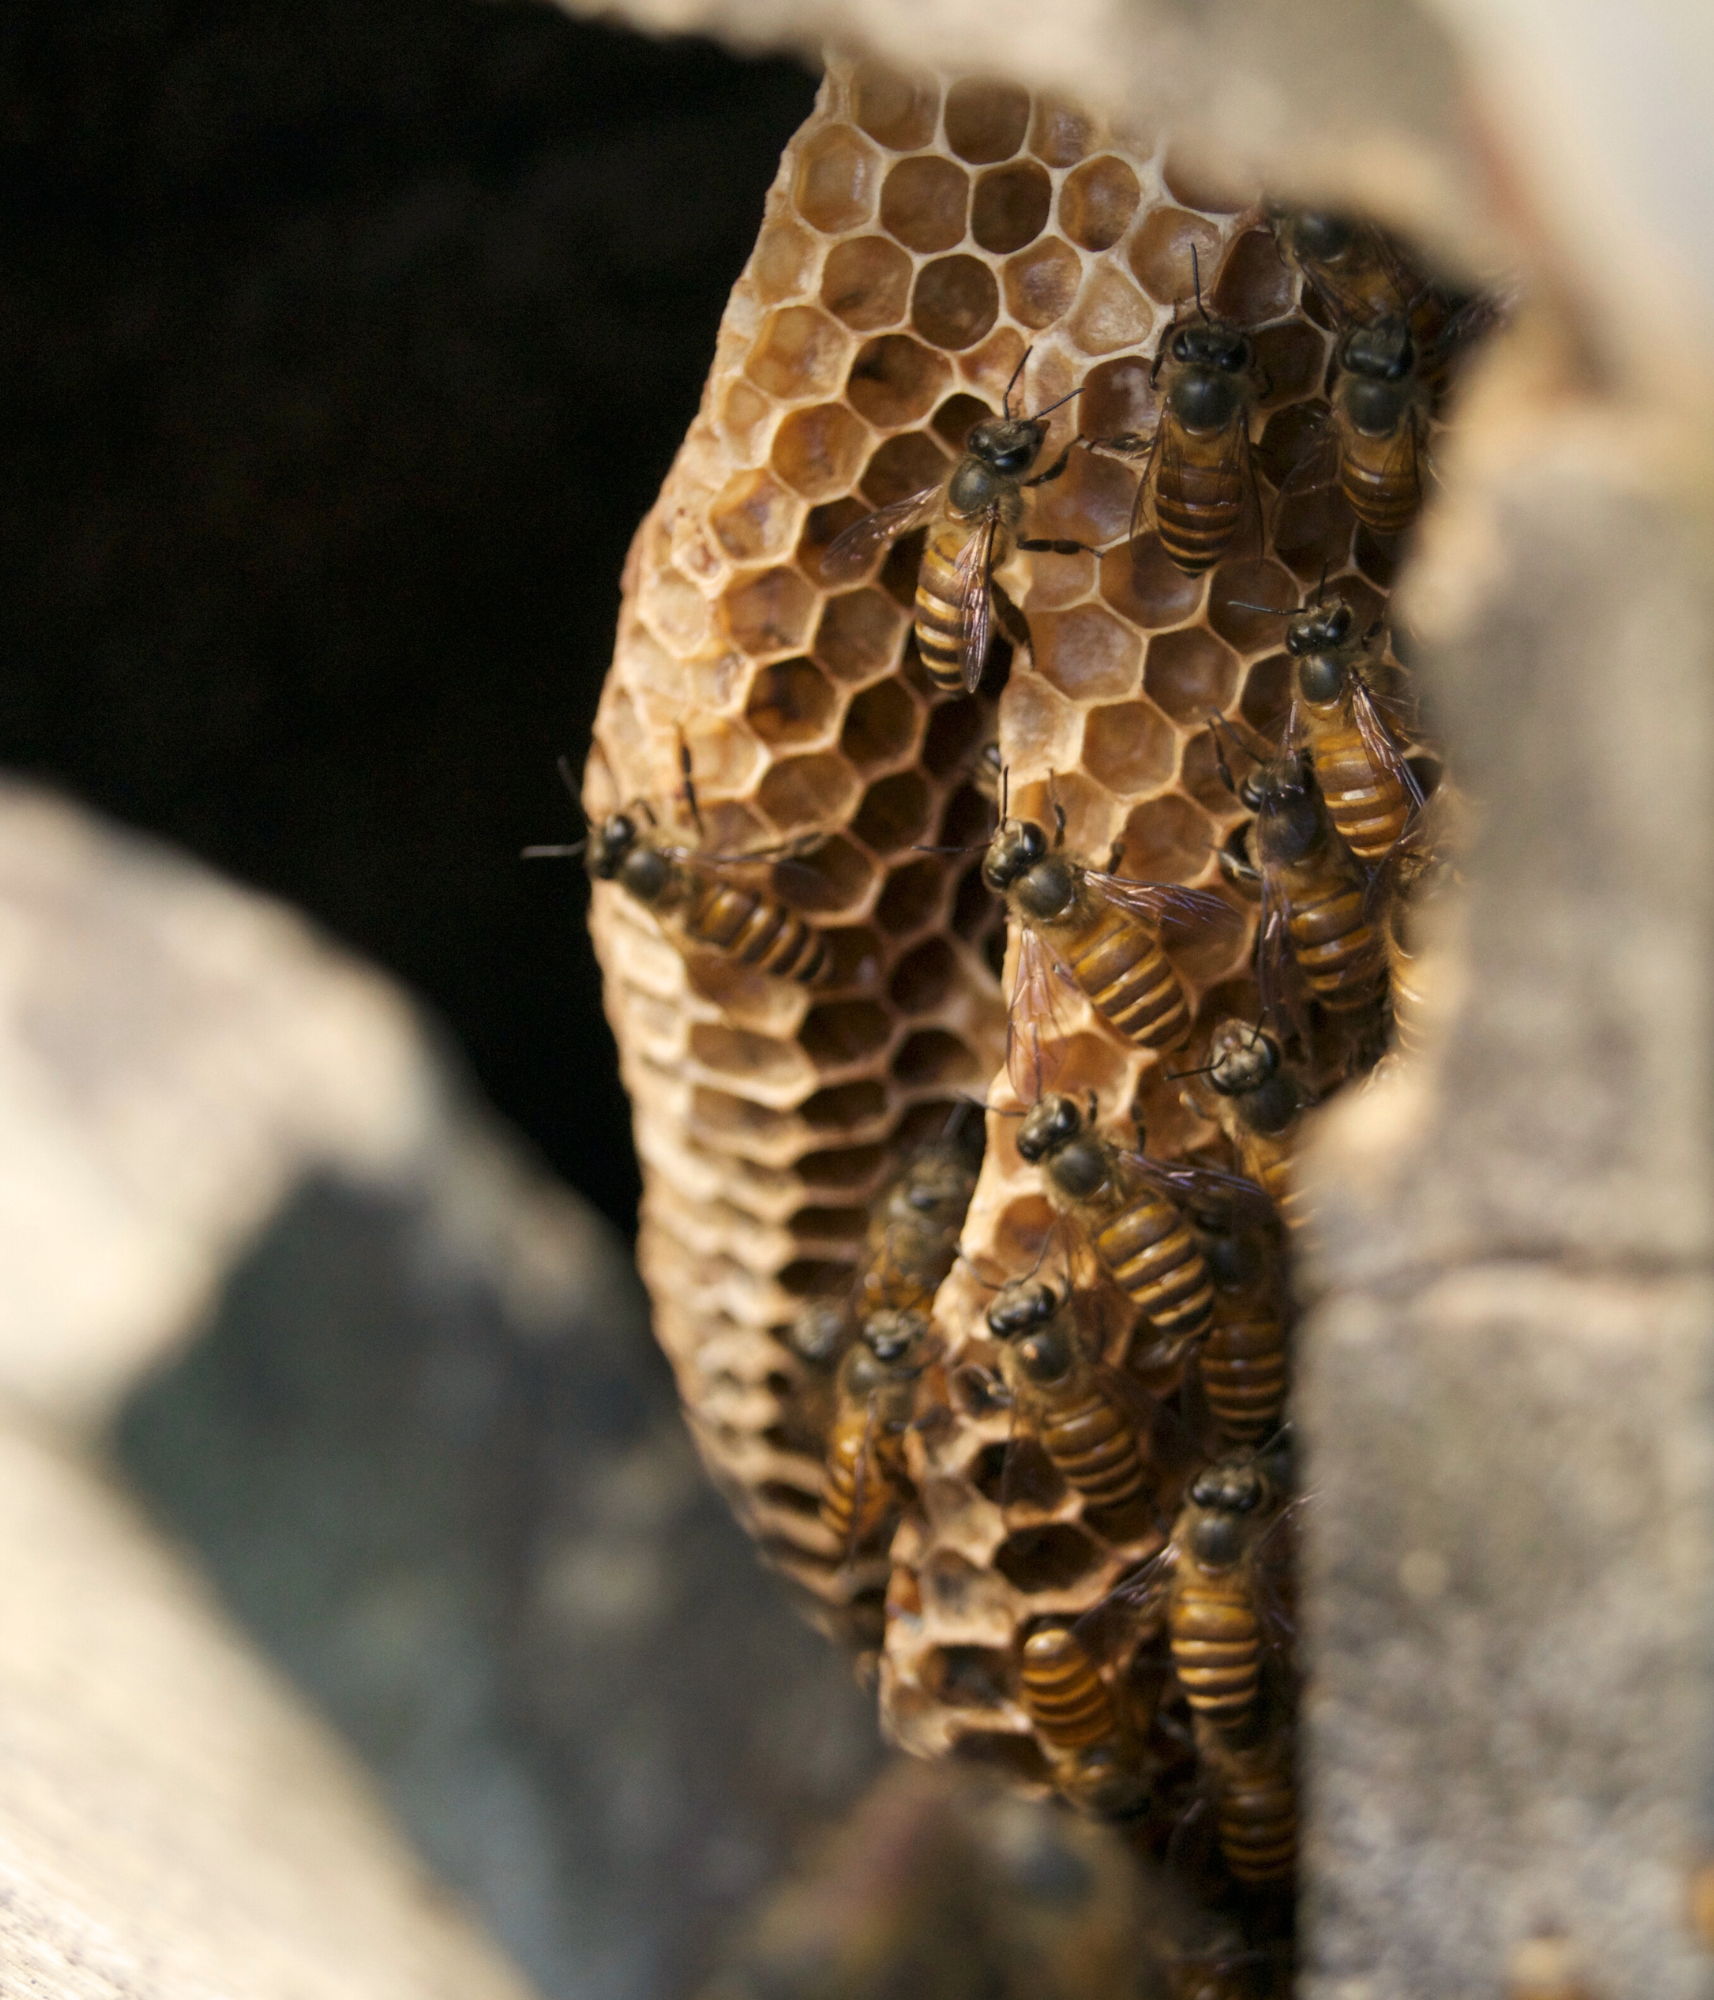  Plusieurs abeilles sur des alvéoles avec un fond noir